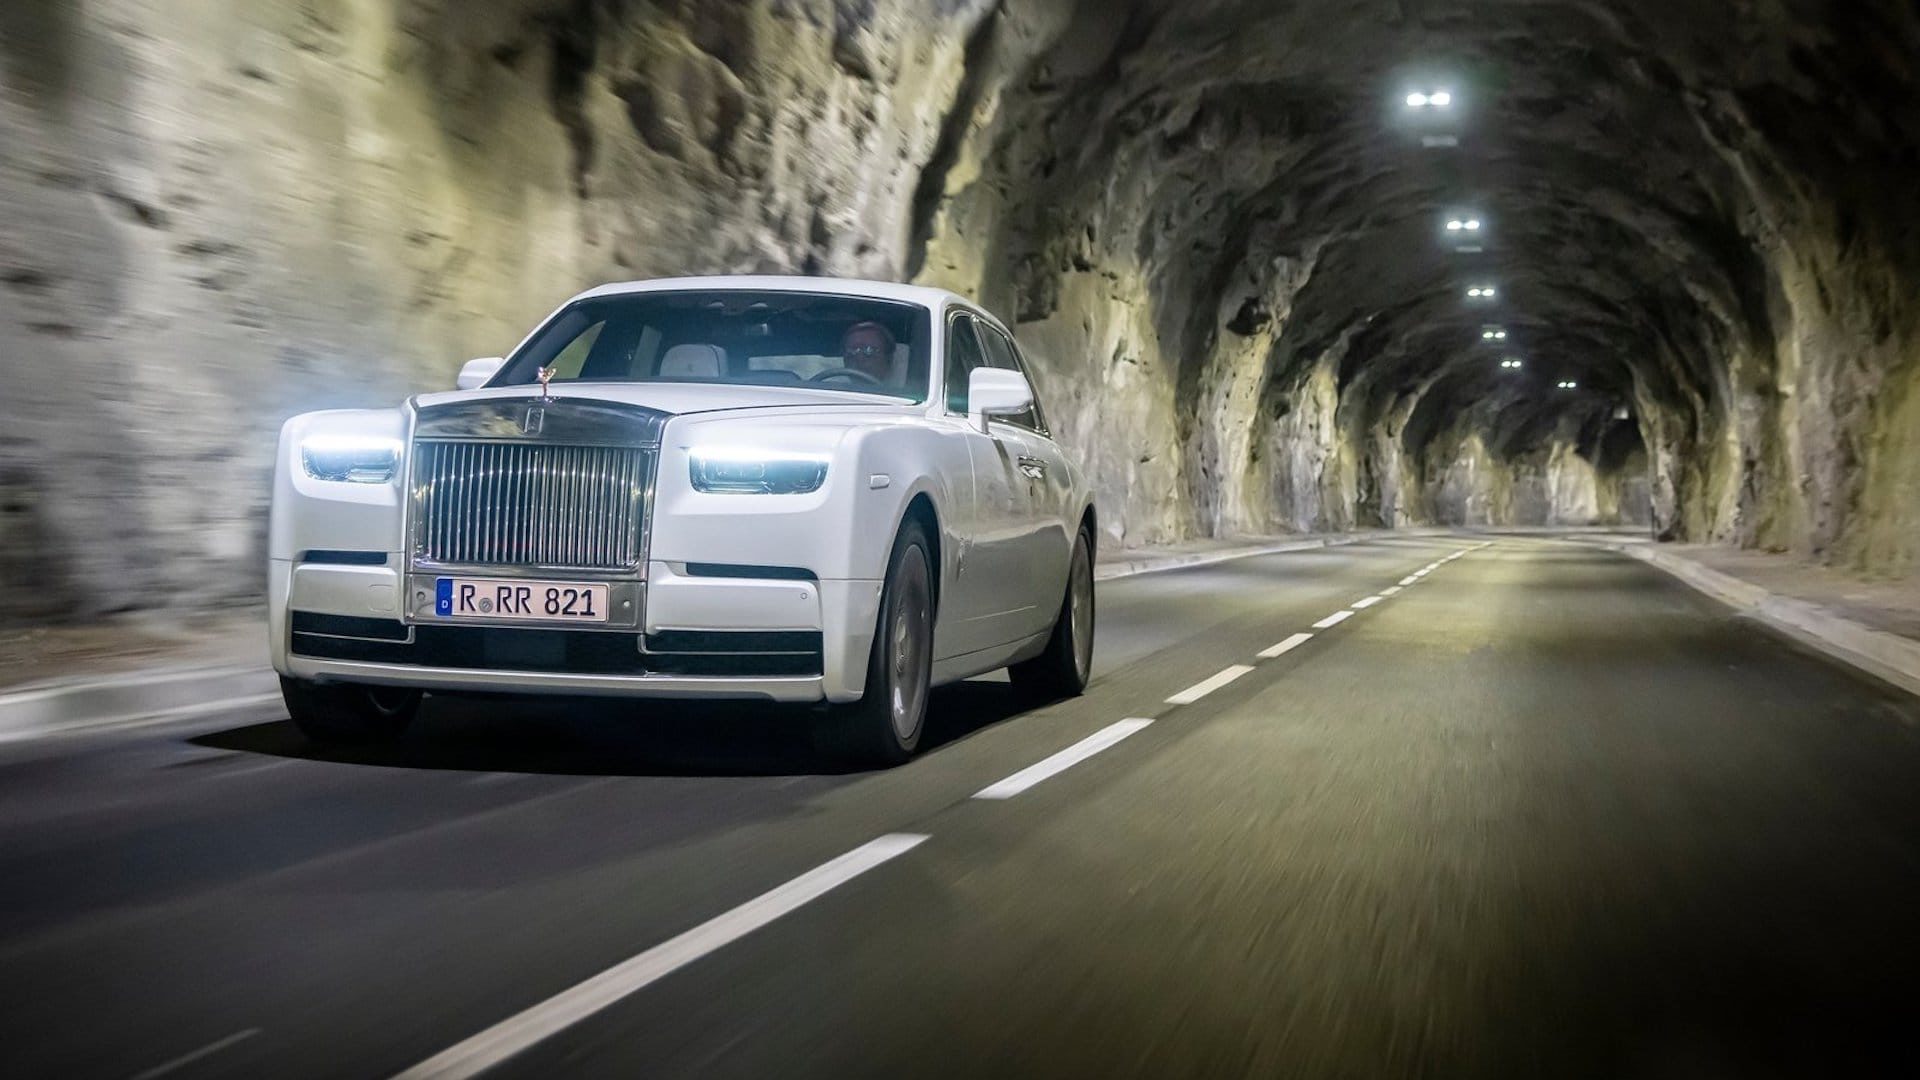 UK luxury car ownership on the rise